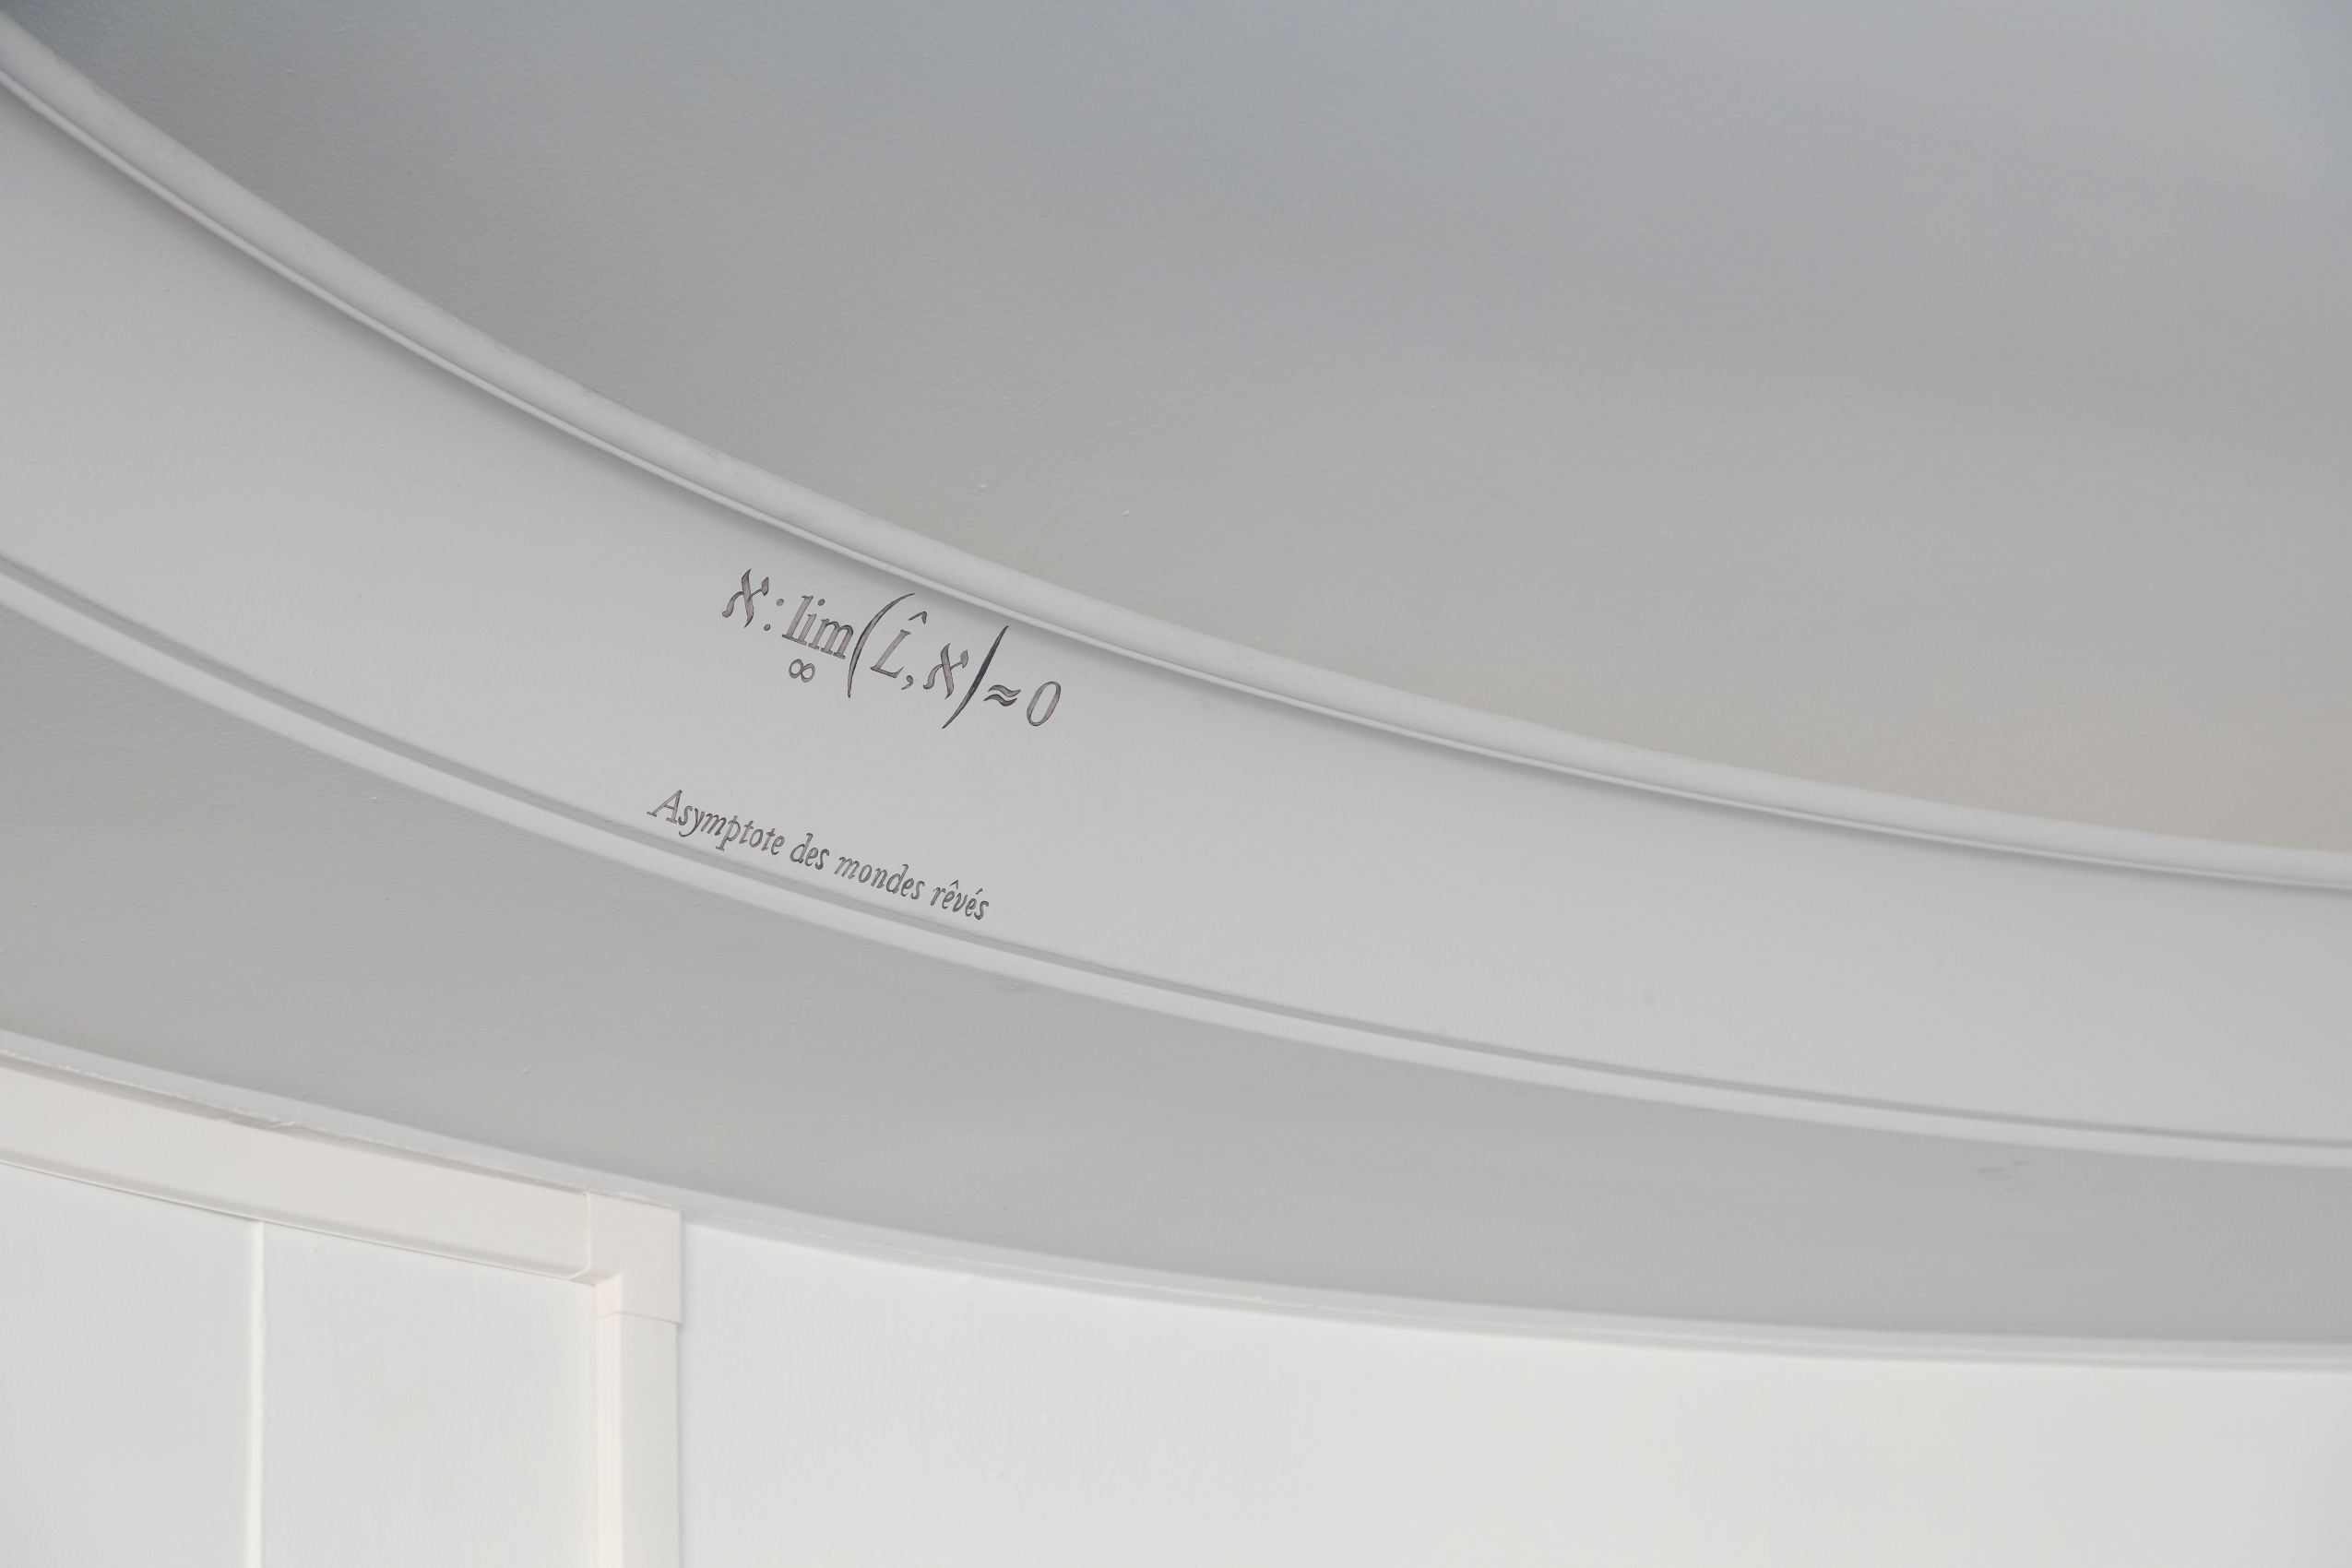 Au creux du plafond circulaire du bureau de la Présidence, les moulures accompagnent une inscription mystérieuse : une équation écrite en noir sur le mur blanc.